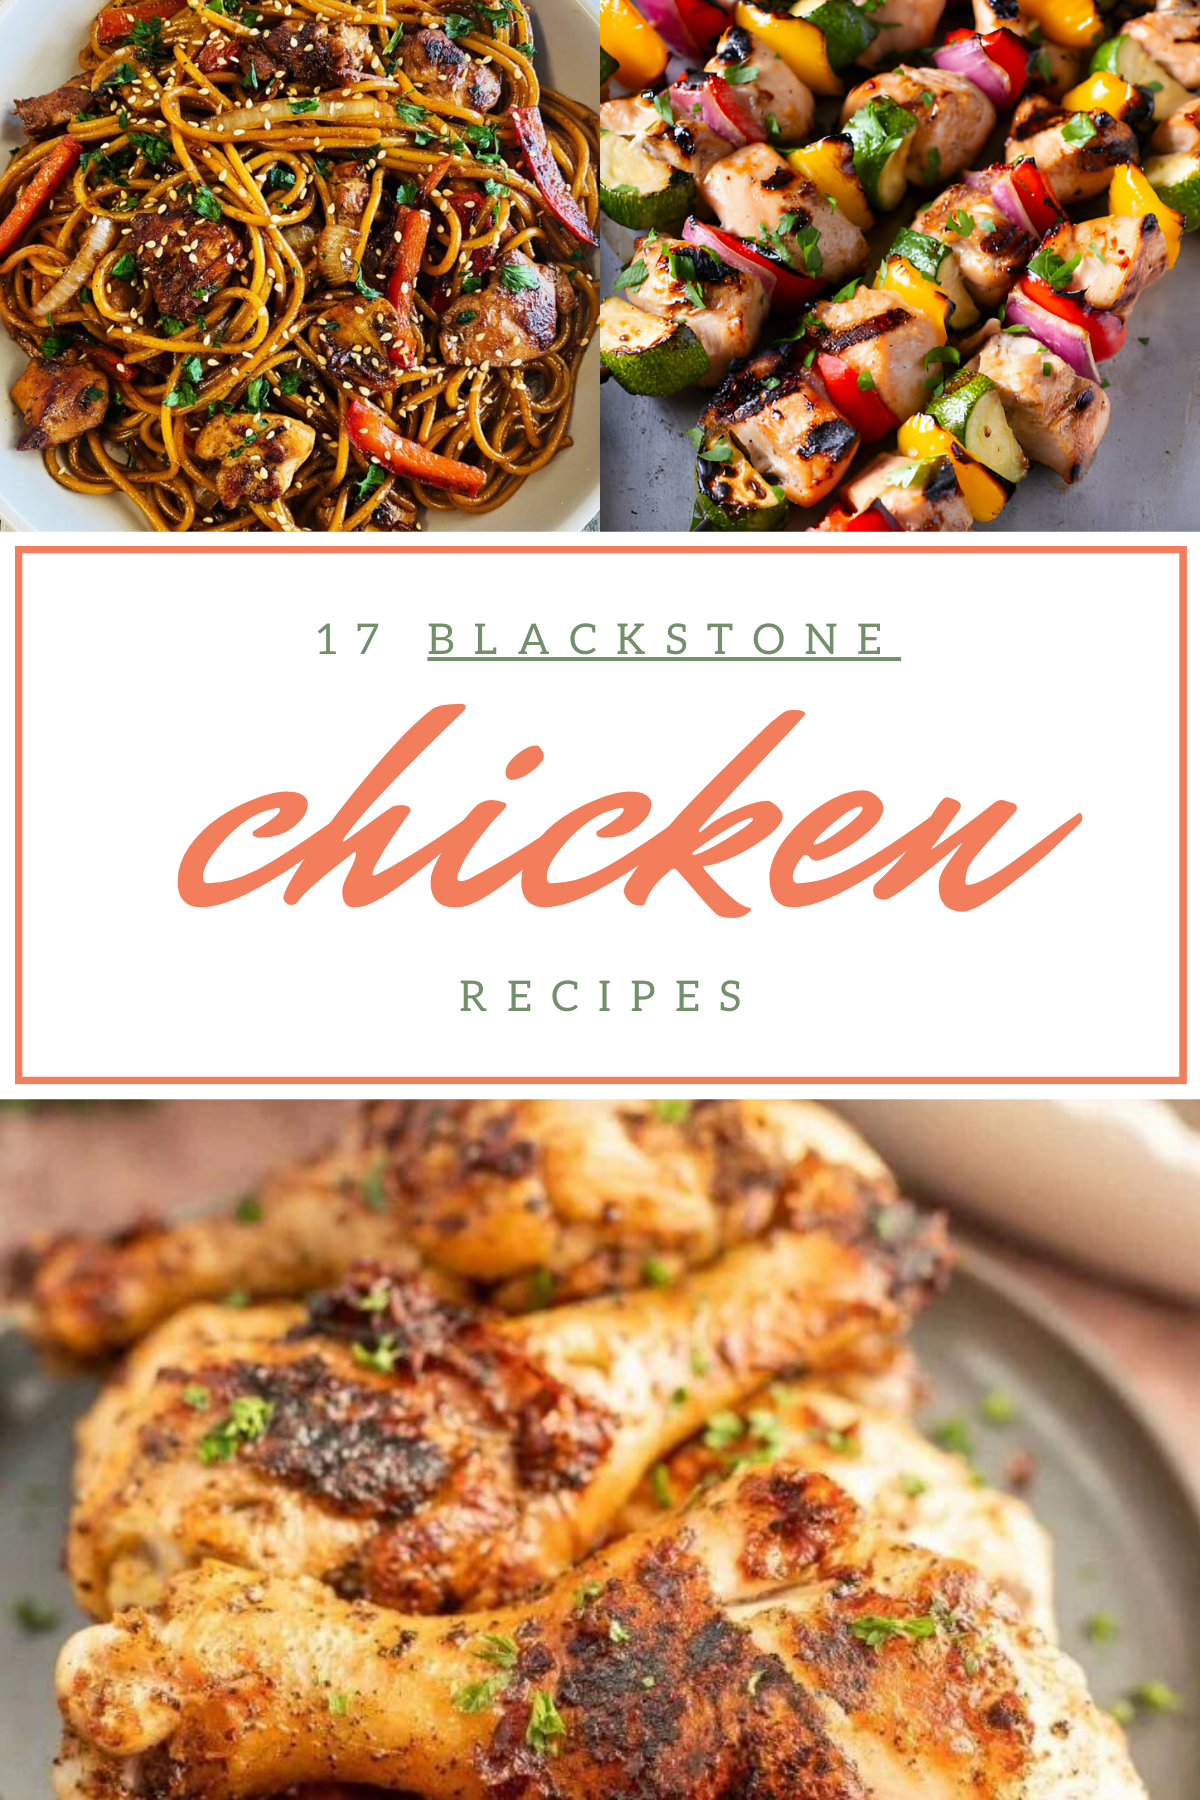 blackstone chicken recipes
